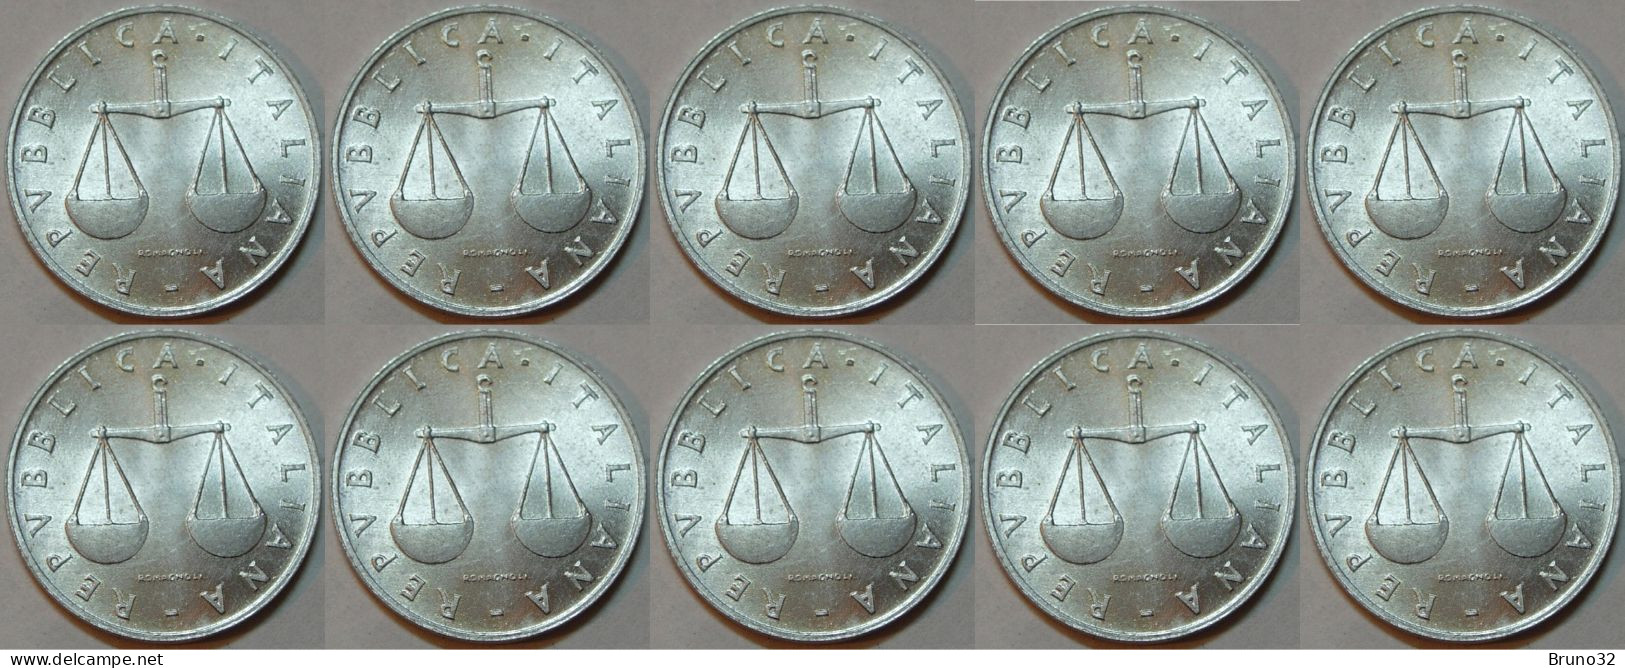 ITALIA - Lire 1 1955 - FDC/Unc Da Rotolino/from Roll 10 Monete/10 Coins - 1 Lire